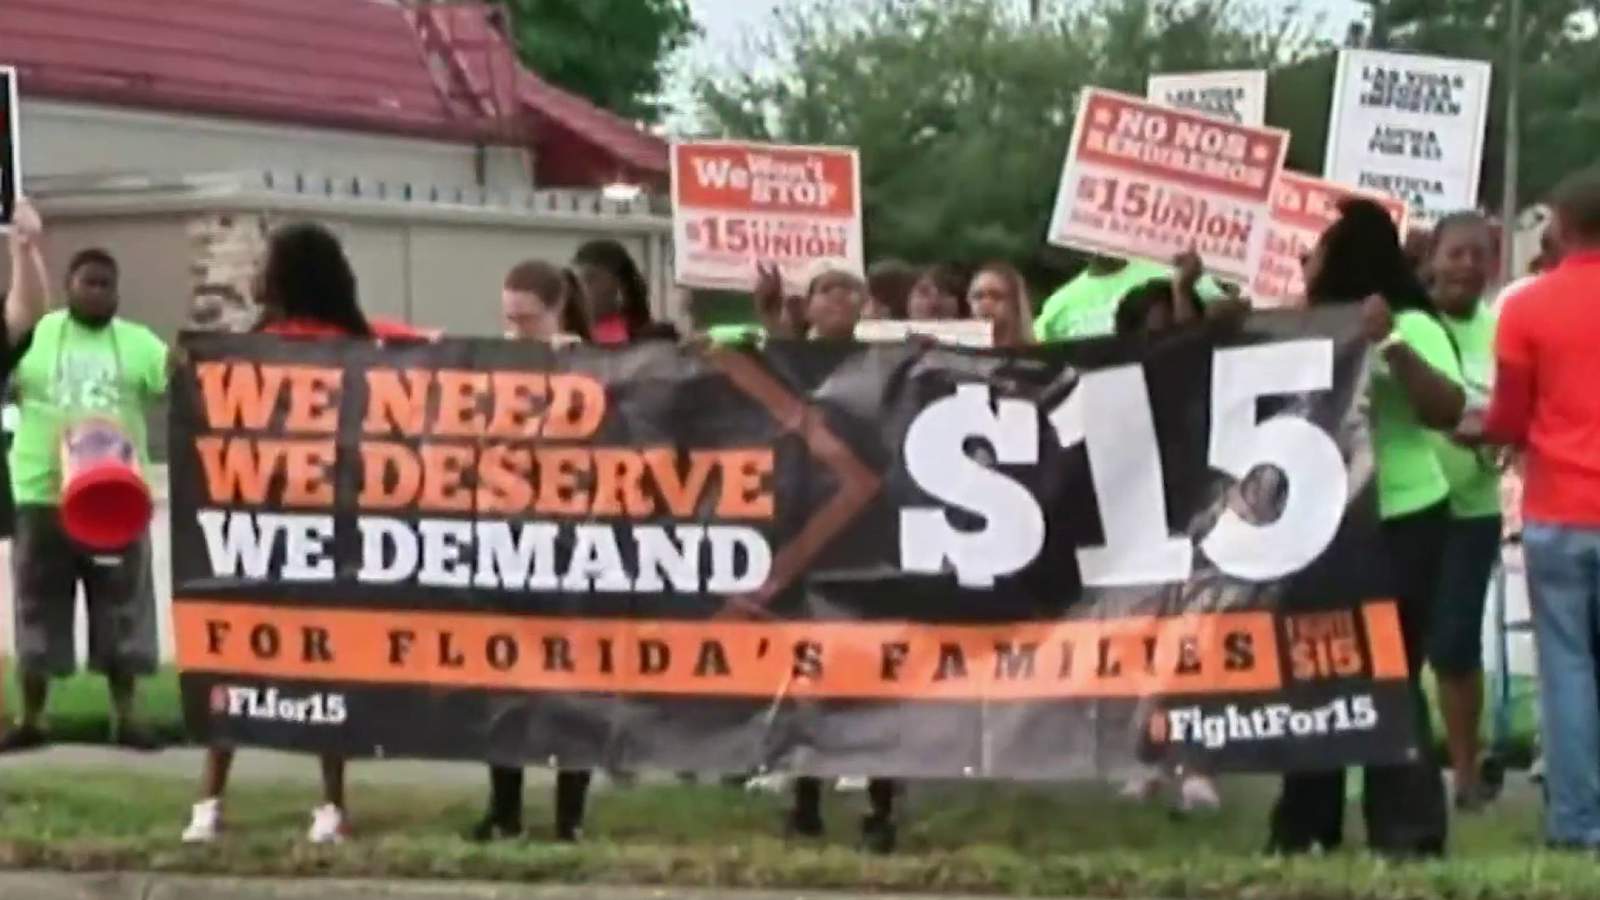 Amendment 2 passes: Floridians vote to raise minimum wage to $15/hour